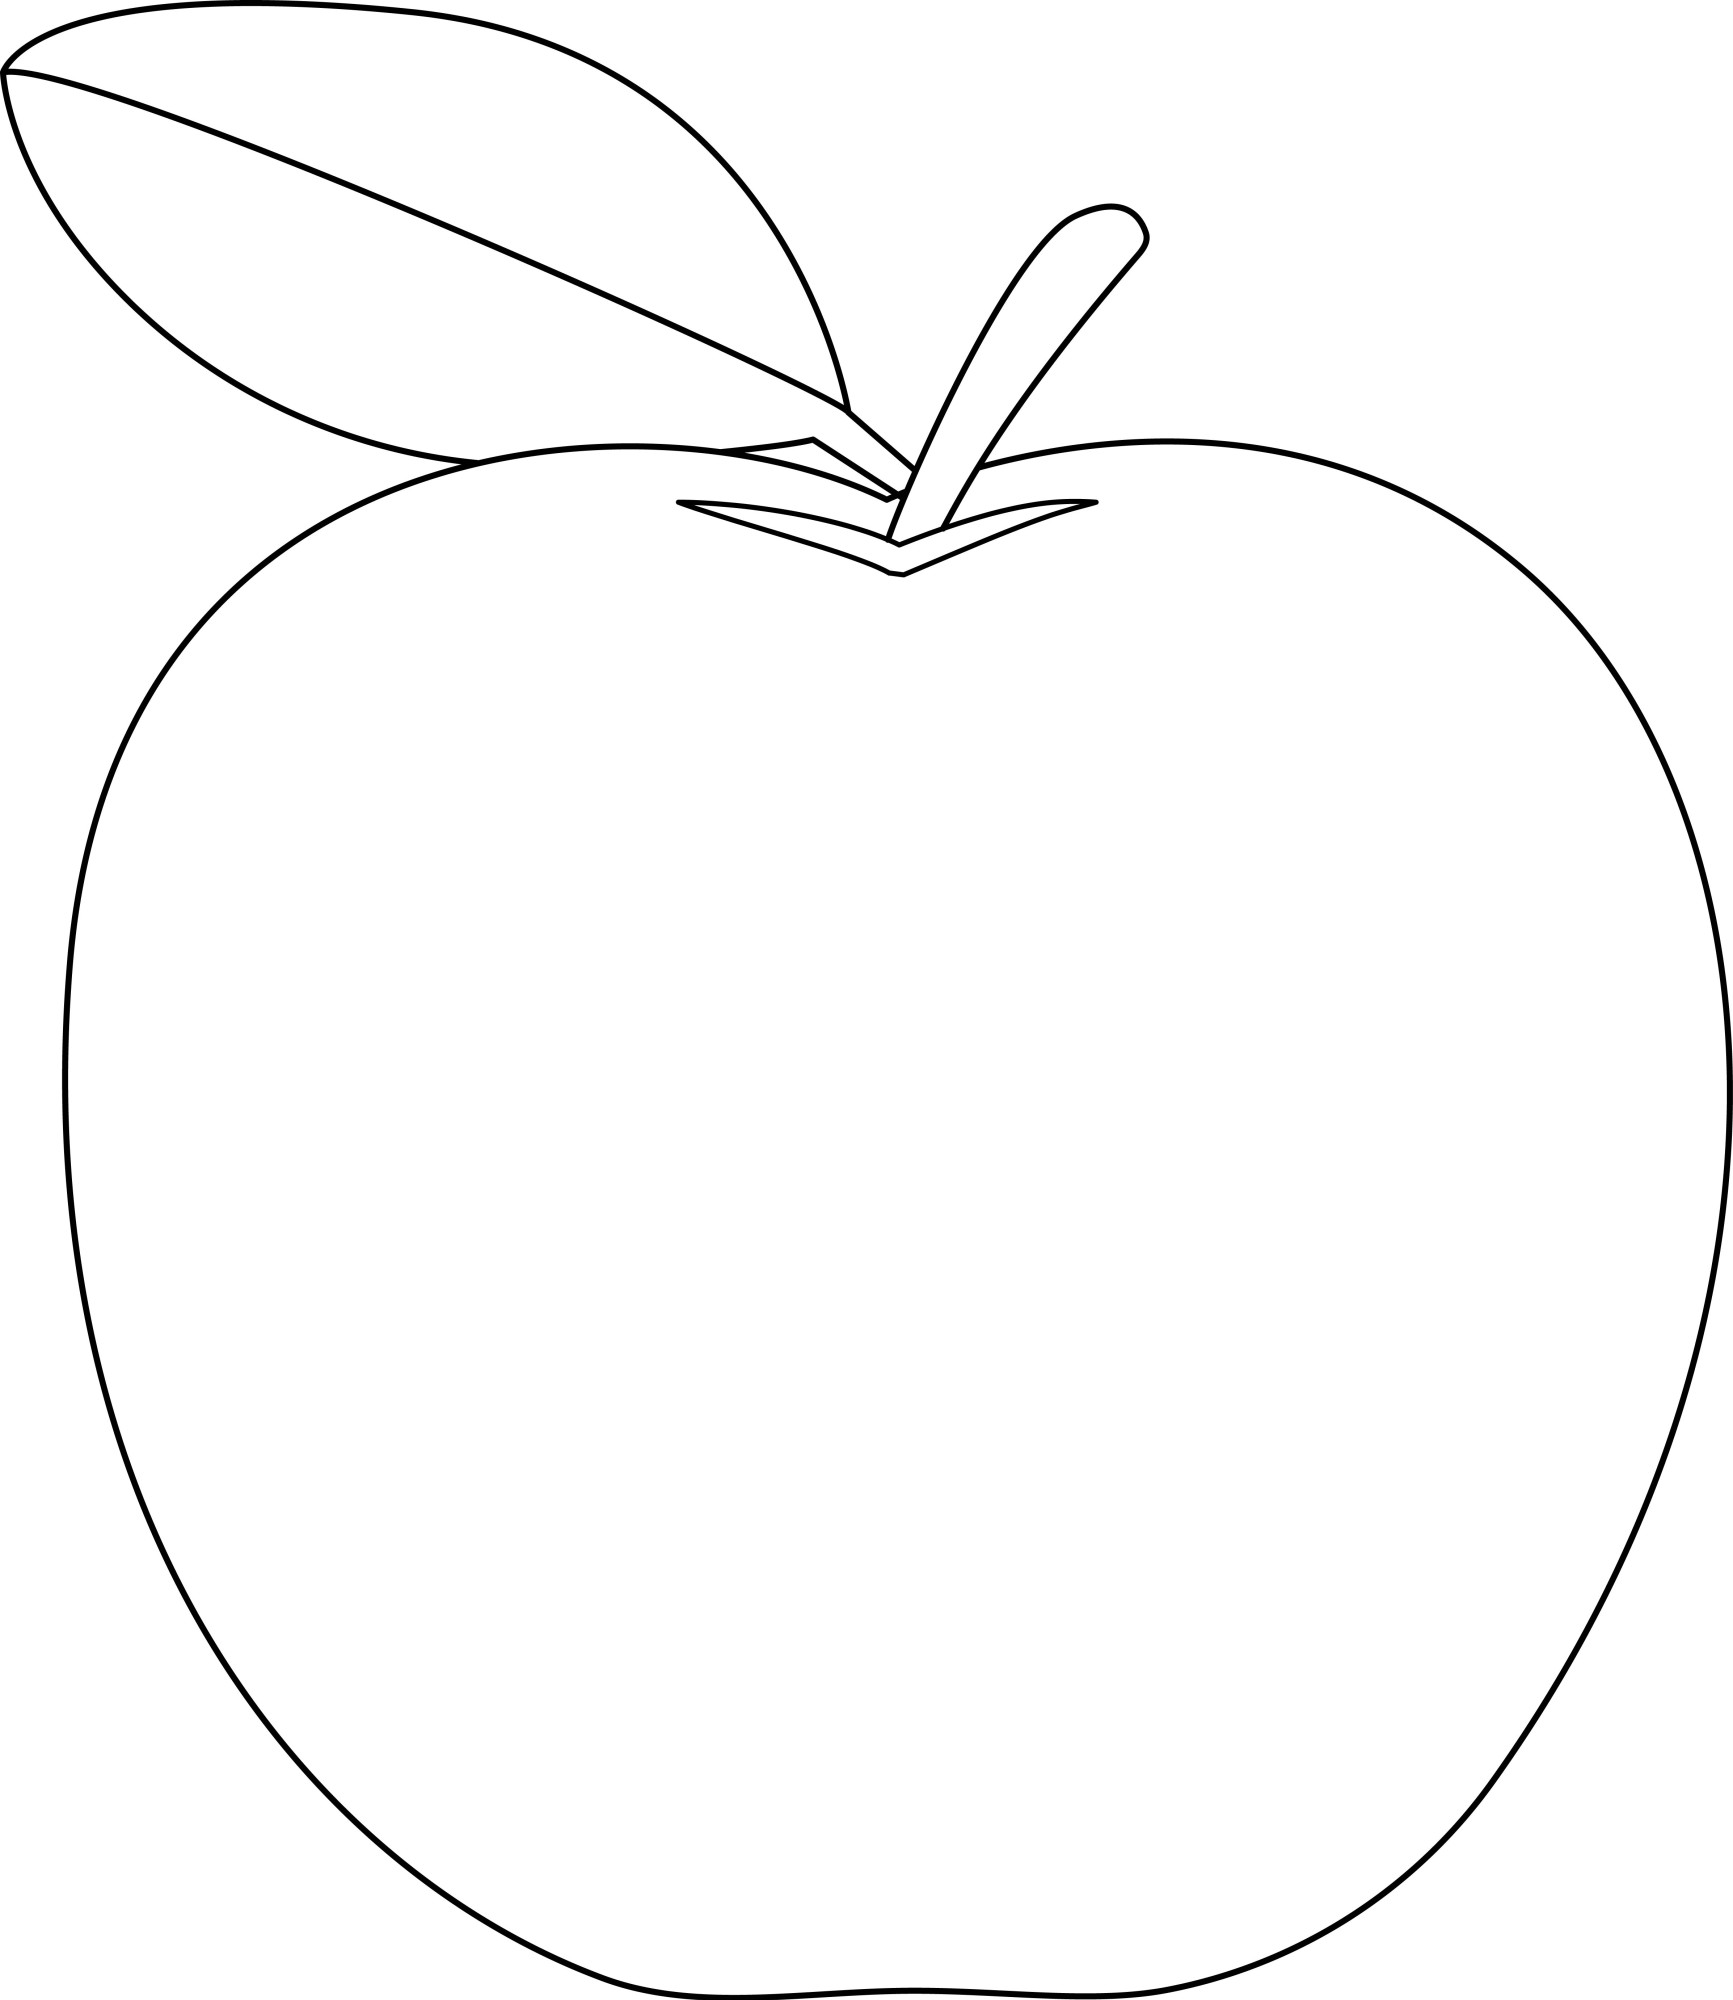 Раскраска для детей: сладкое яблоко